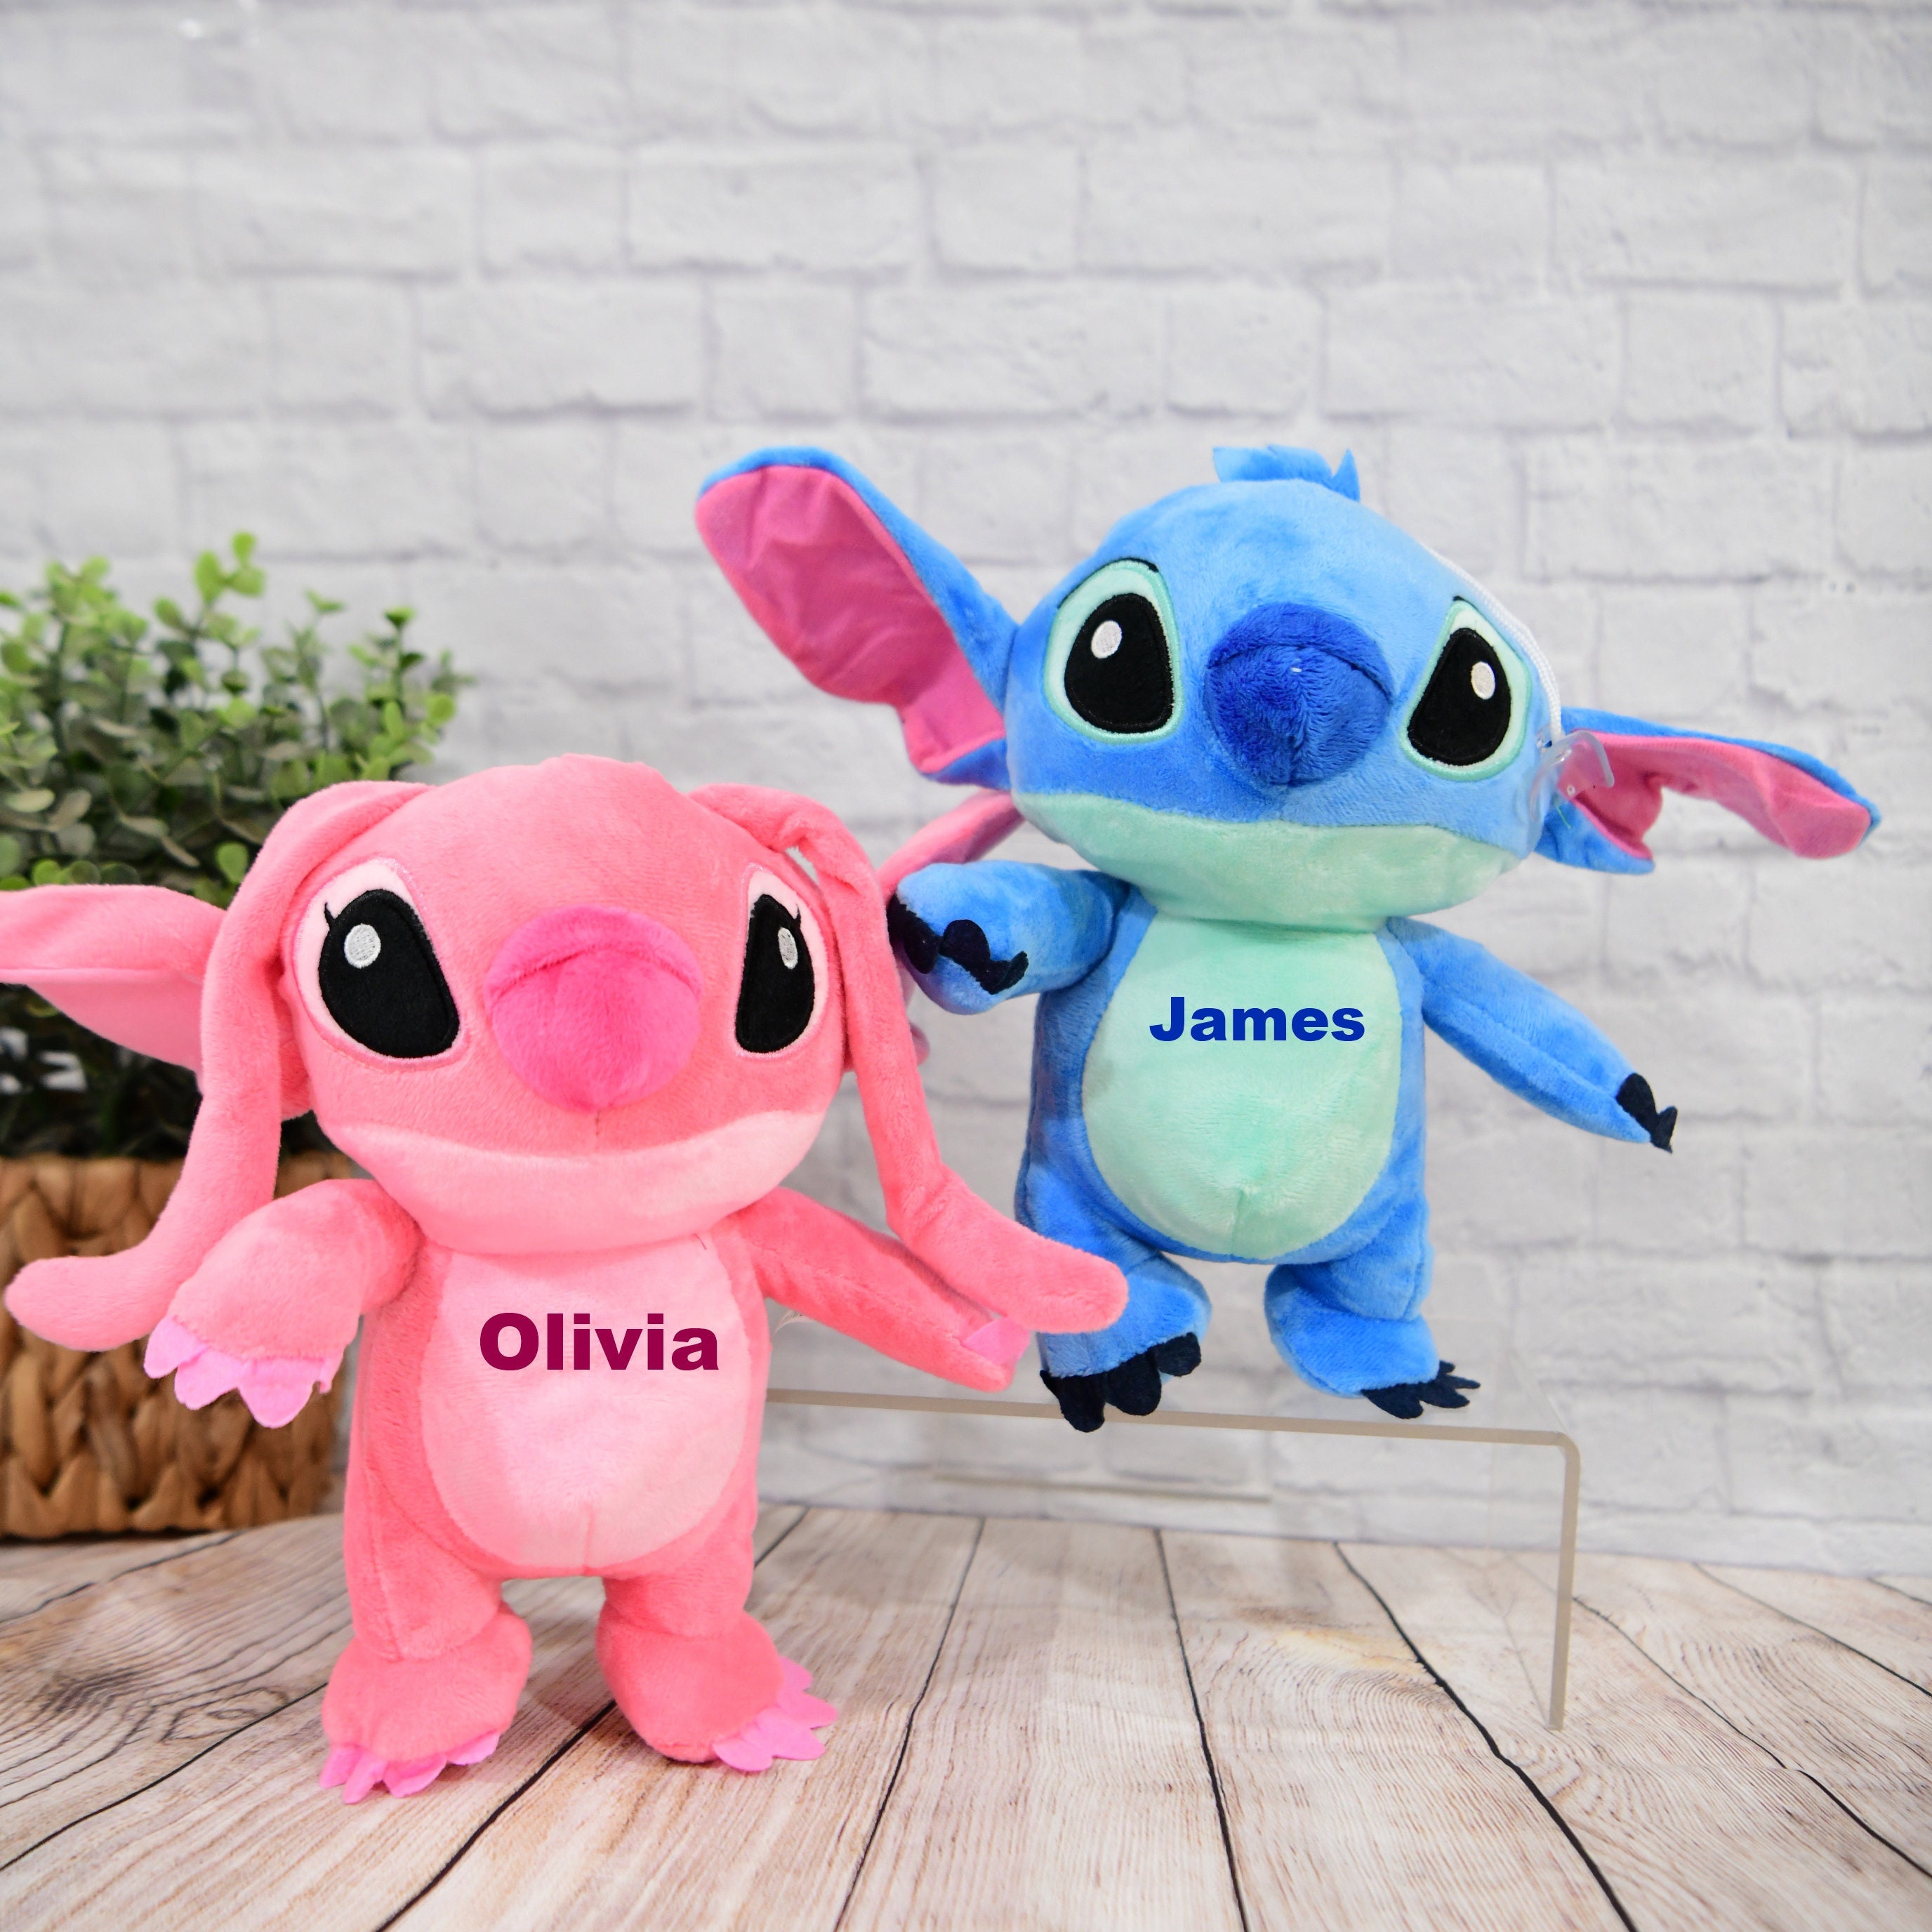 Stitch Plush Toys, 3.9 inch Pink Lilo & Stitch Stuffed Dolls, Pink Stitch Gifts, Soft and Huggable, Stuffed Pillow Buddy, Stitch Gifts for Fans